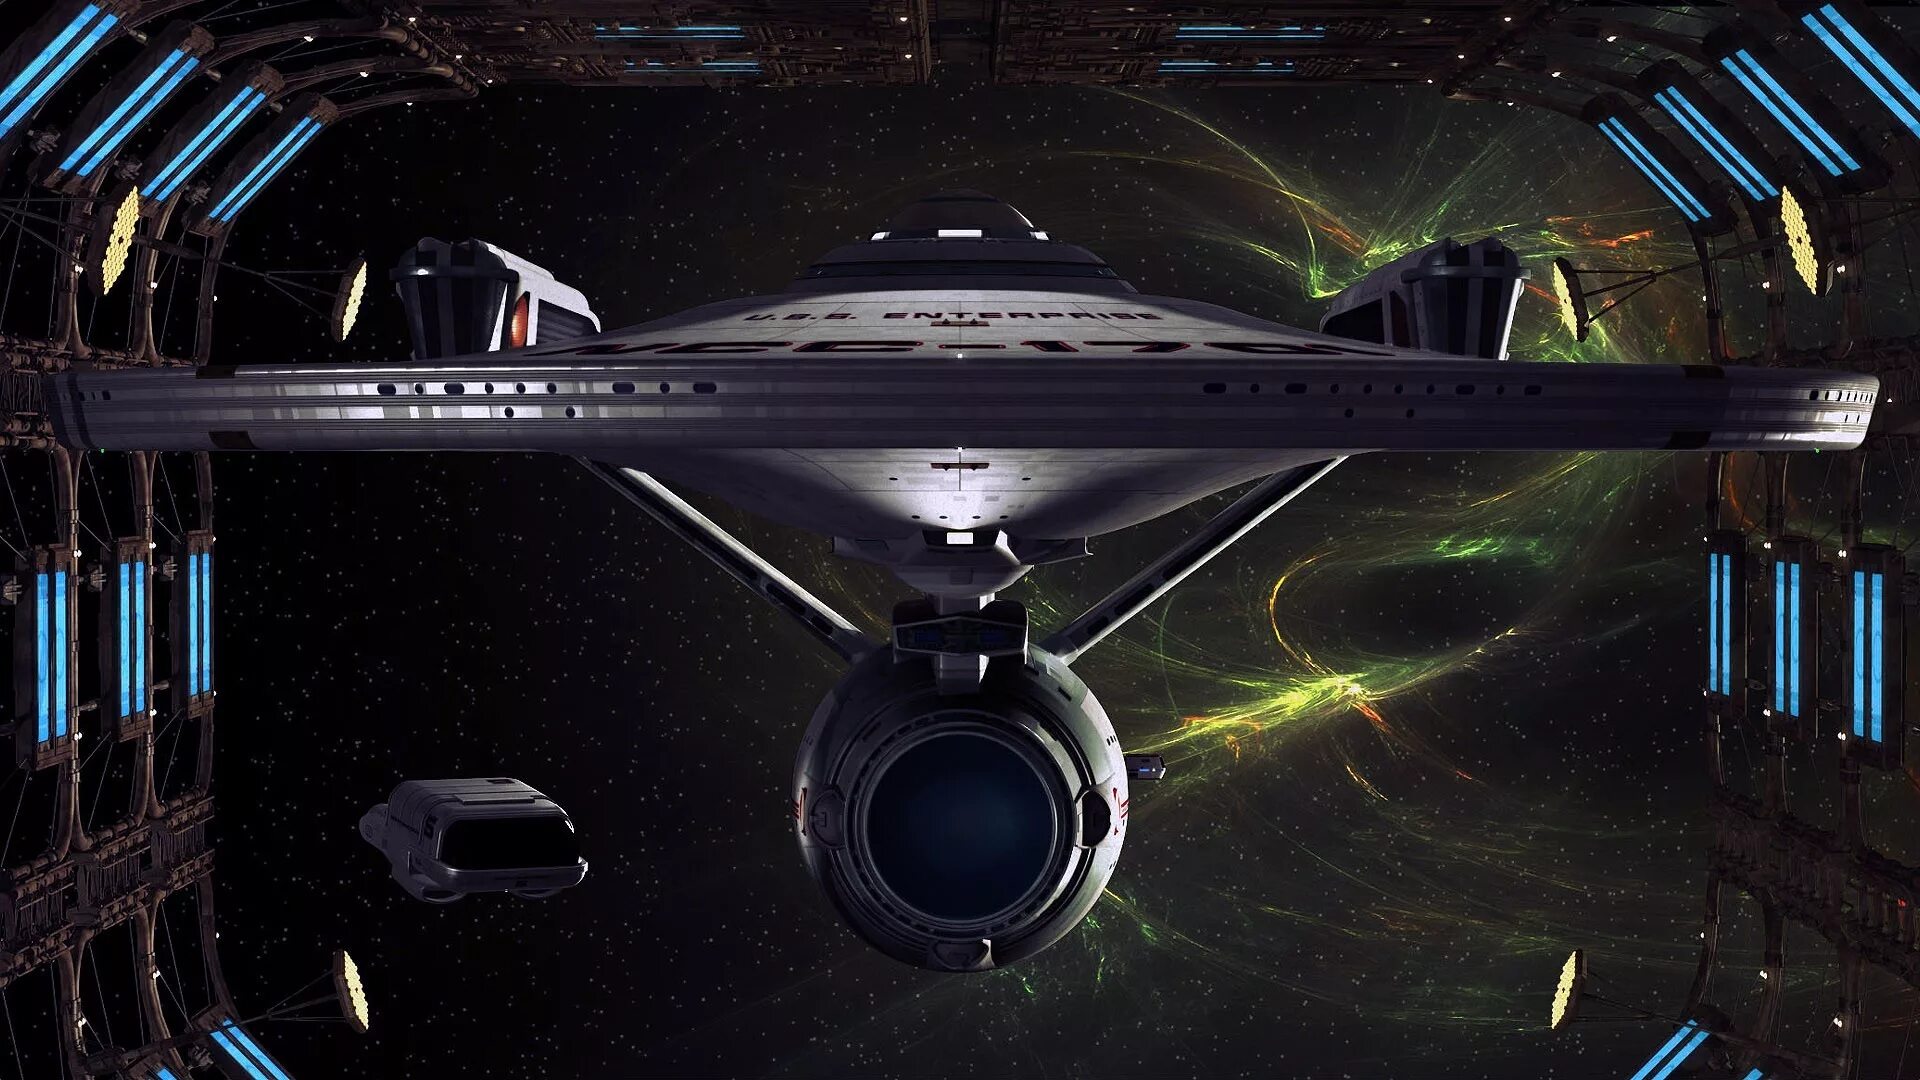 Космические корабли Star Trek. USS Enterprise NCC-1701. Каюта Энтерпрайз 1701.